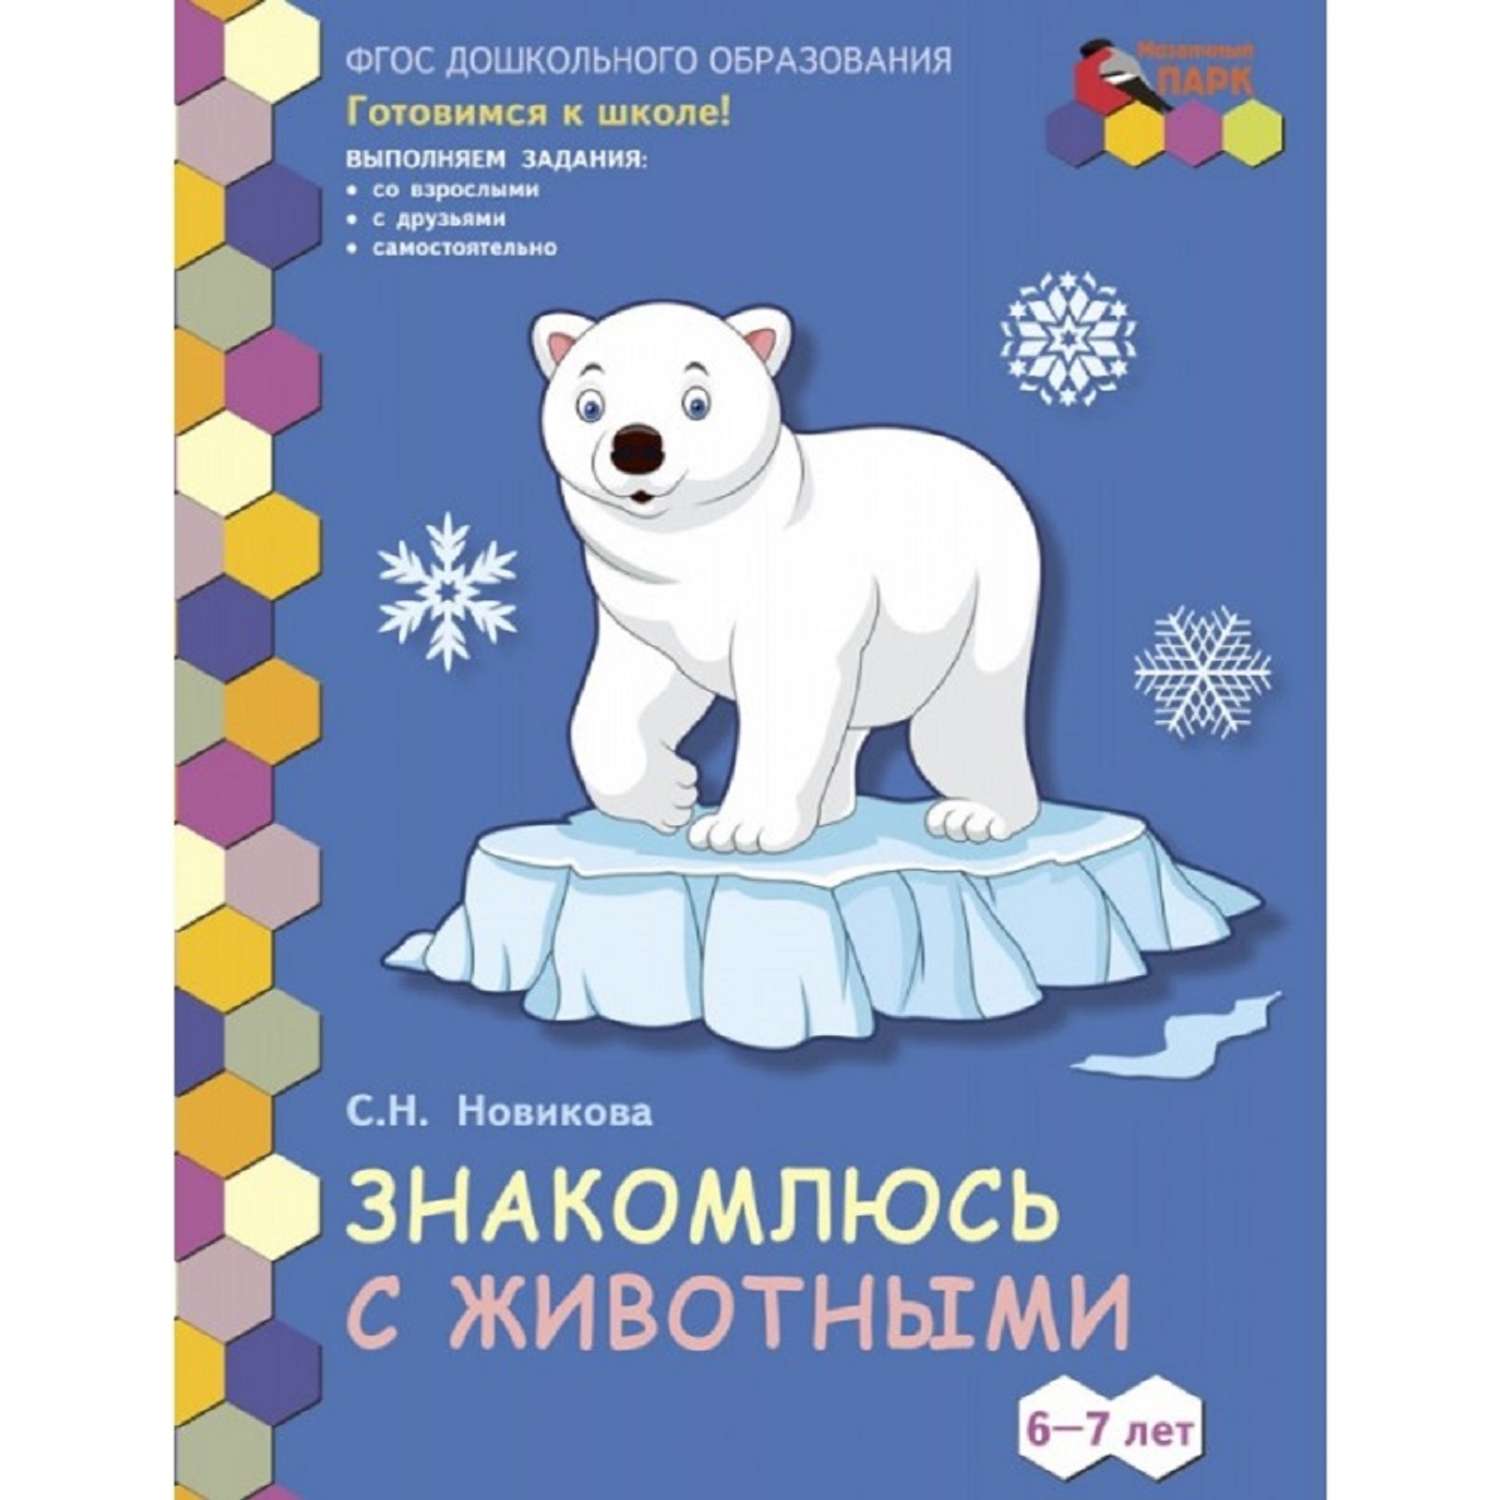 Развивающая тетрадь Русское Слово Знакомлюсь с животными. Для детей 6-7 лет - фото 1